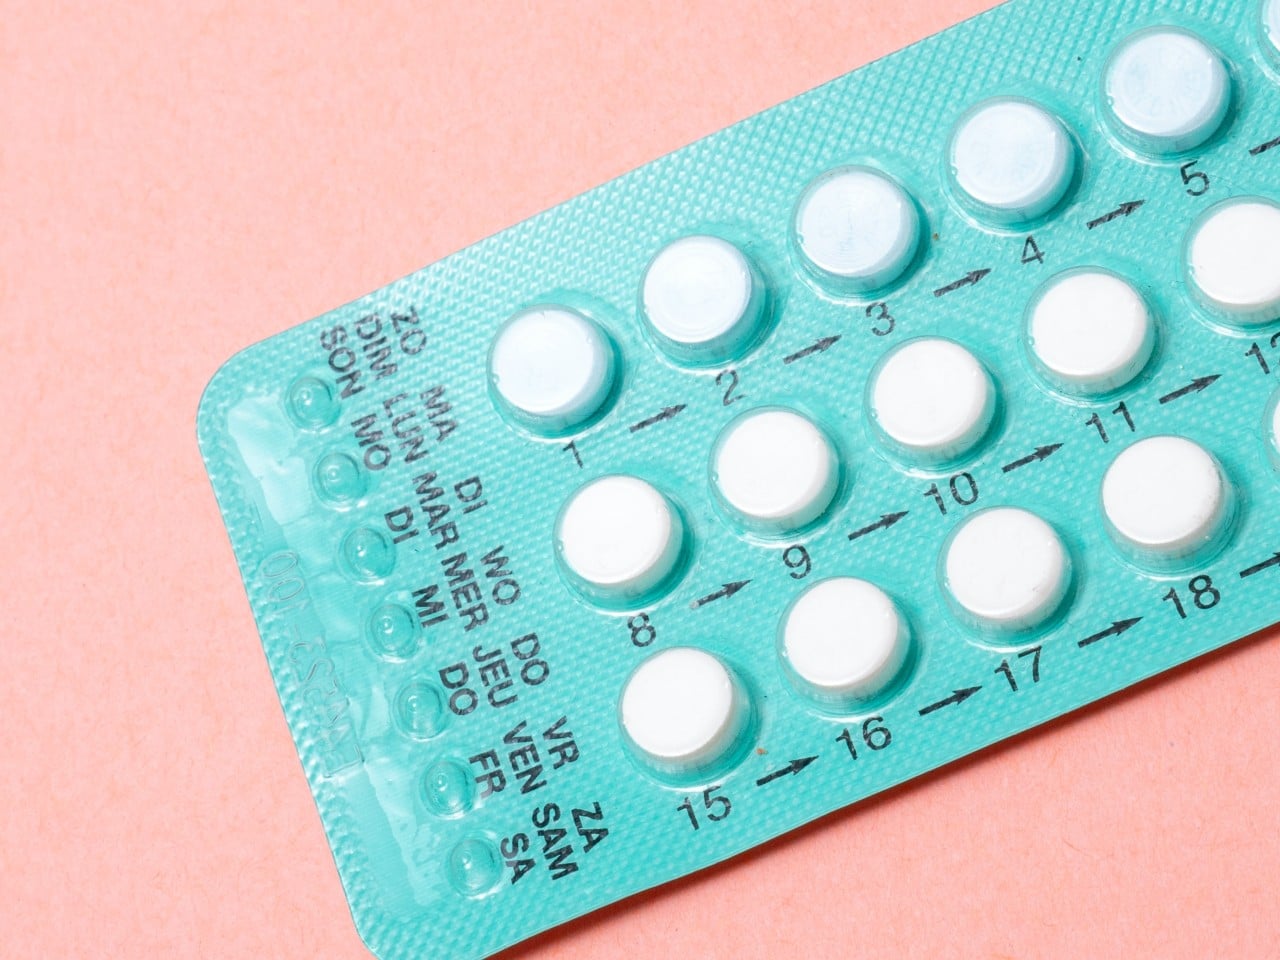 Pastillas anticonceptivas, cómo tomarlas